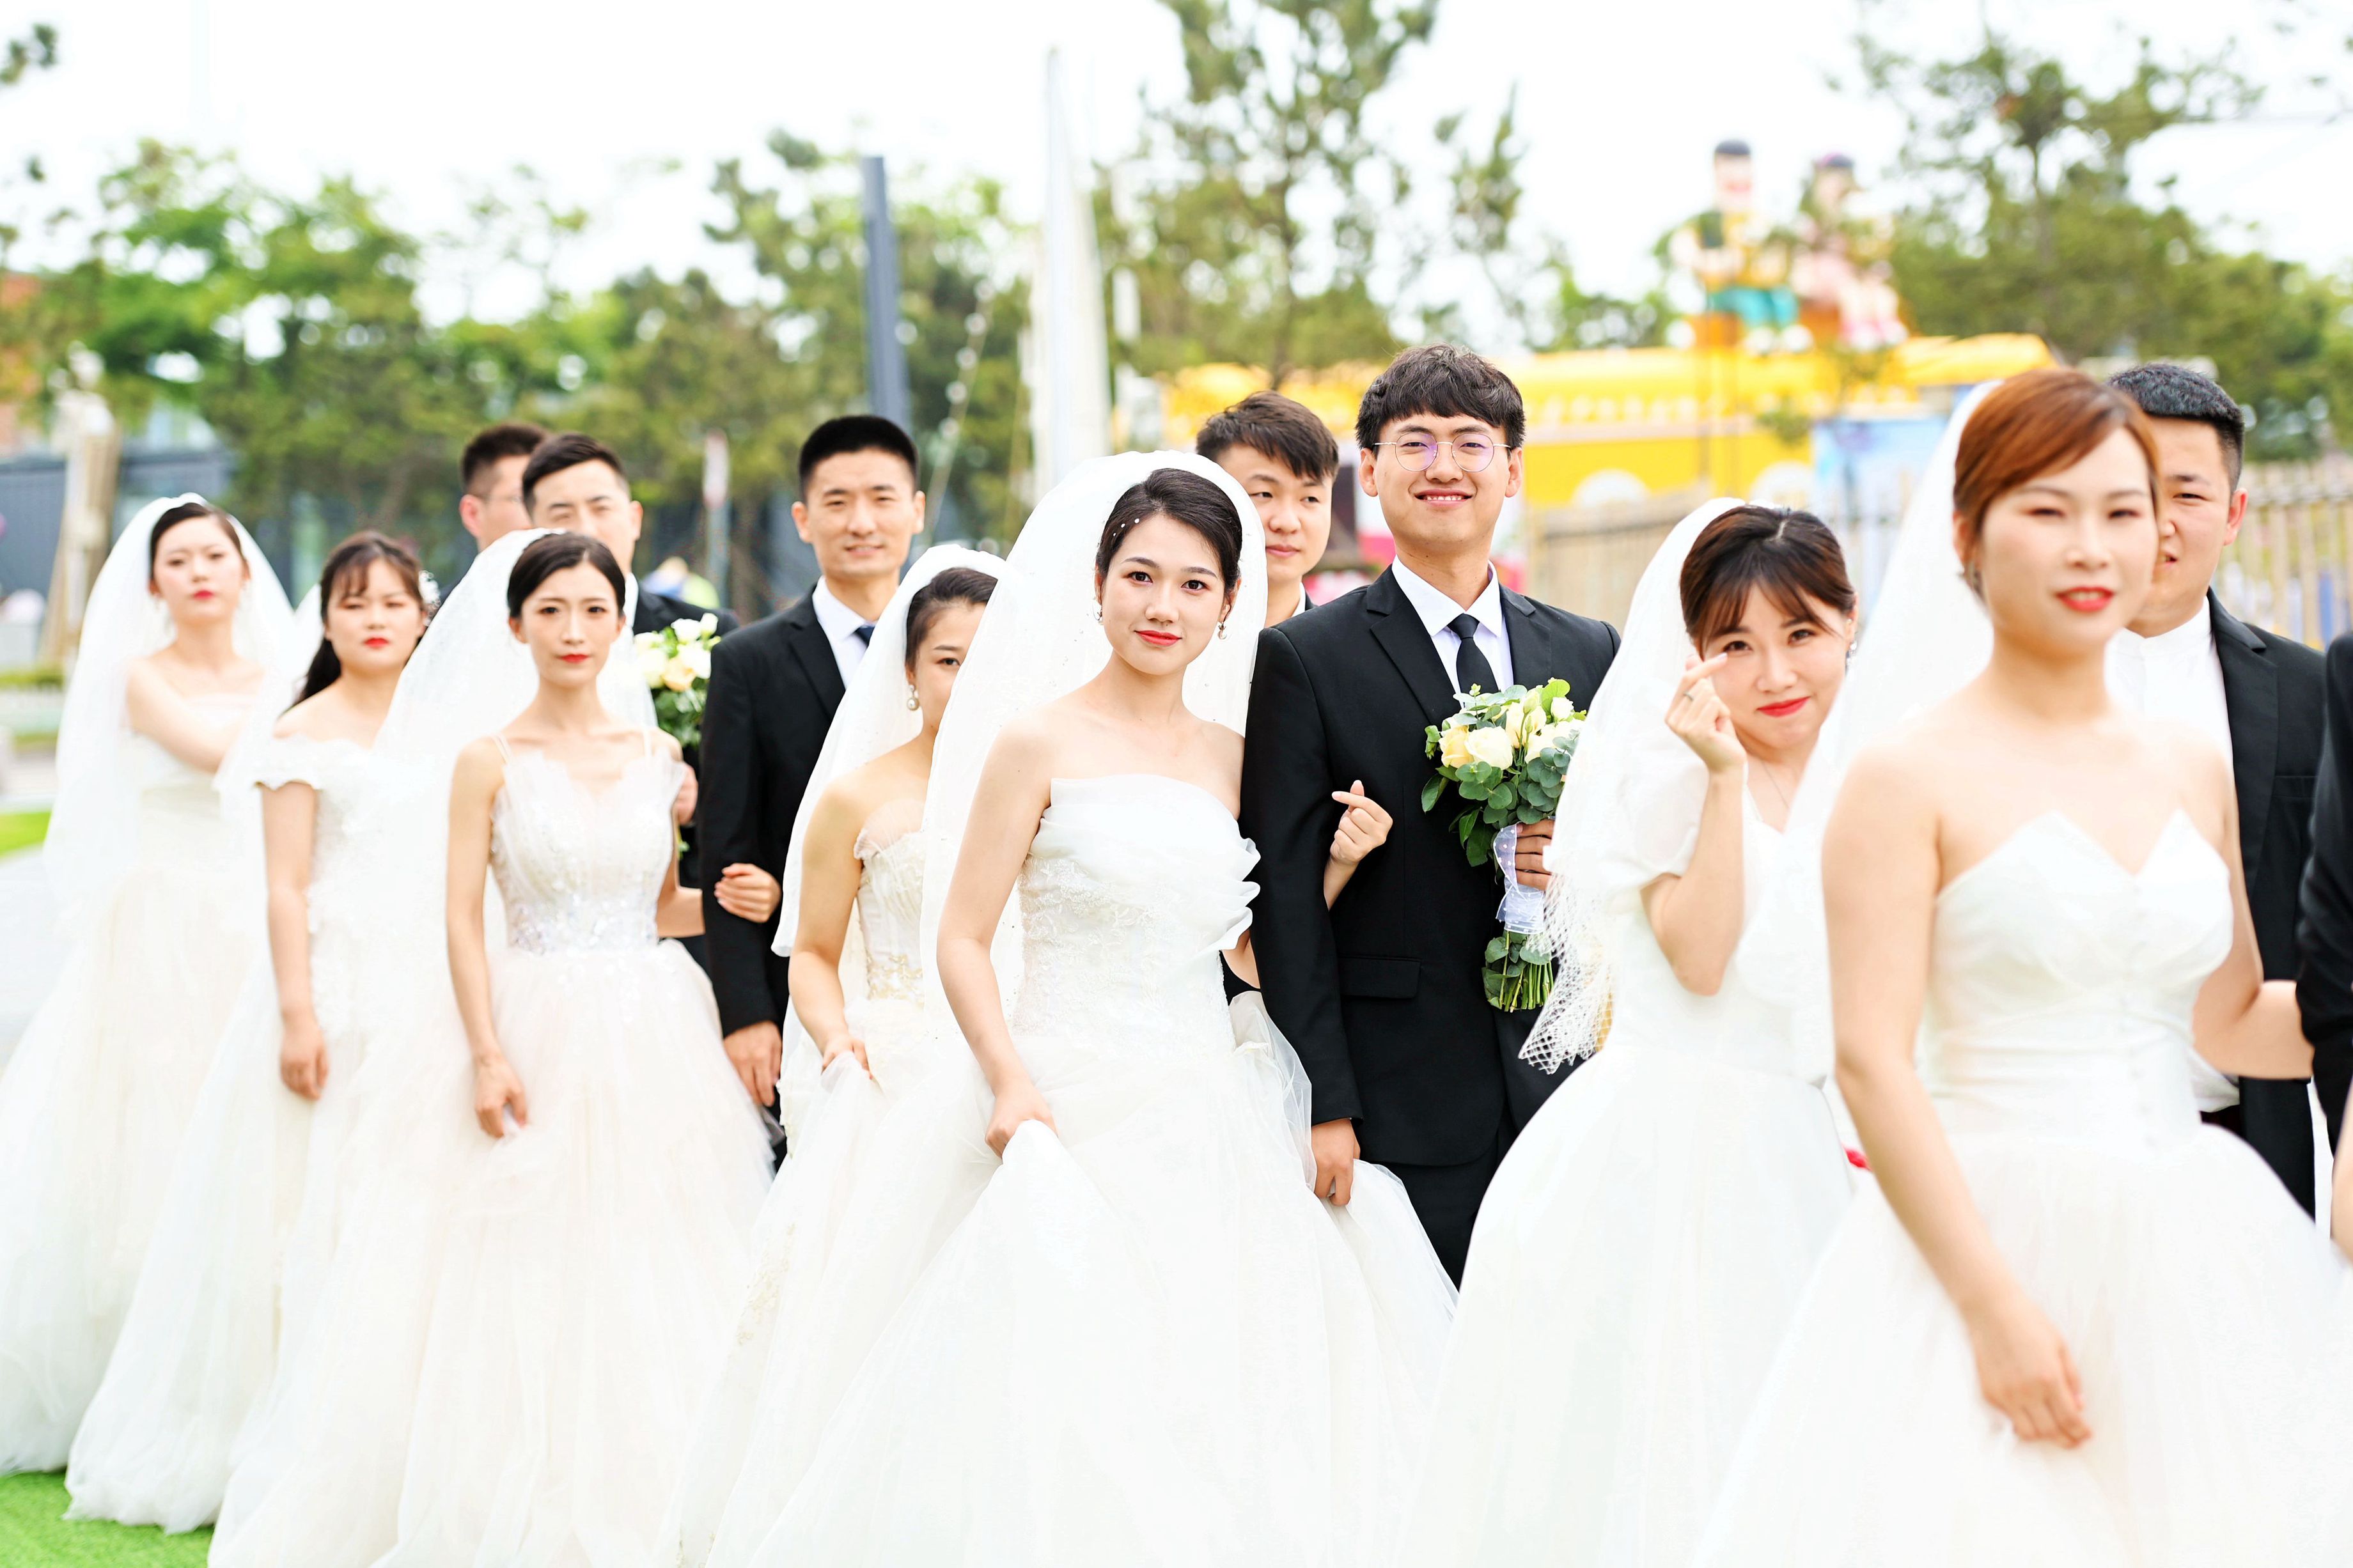 山东青岛:集体婚礼倡文明婚庆新风尚